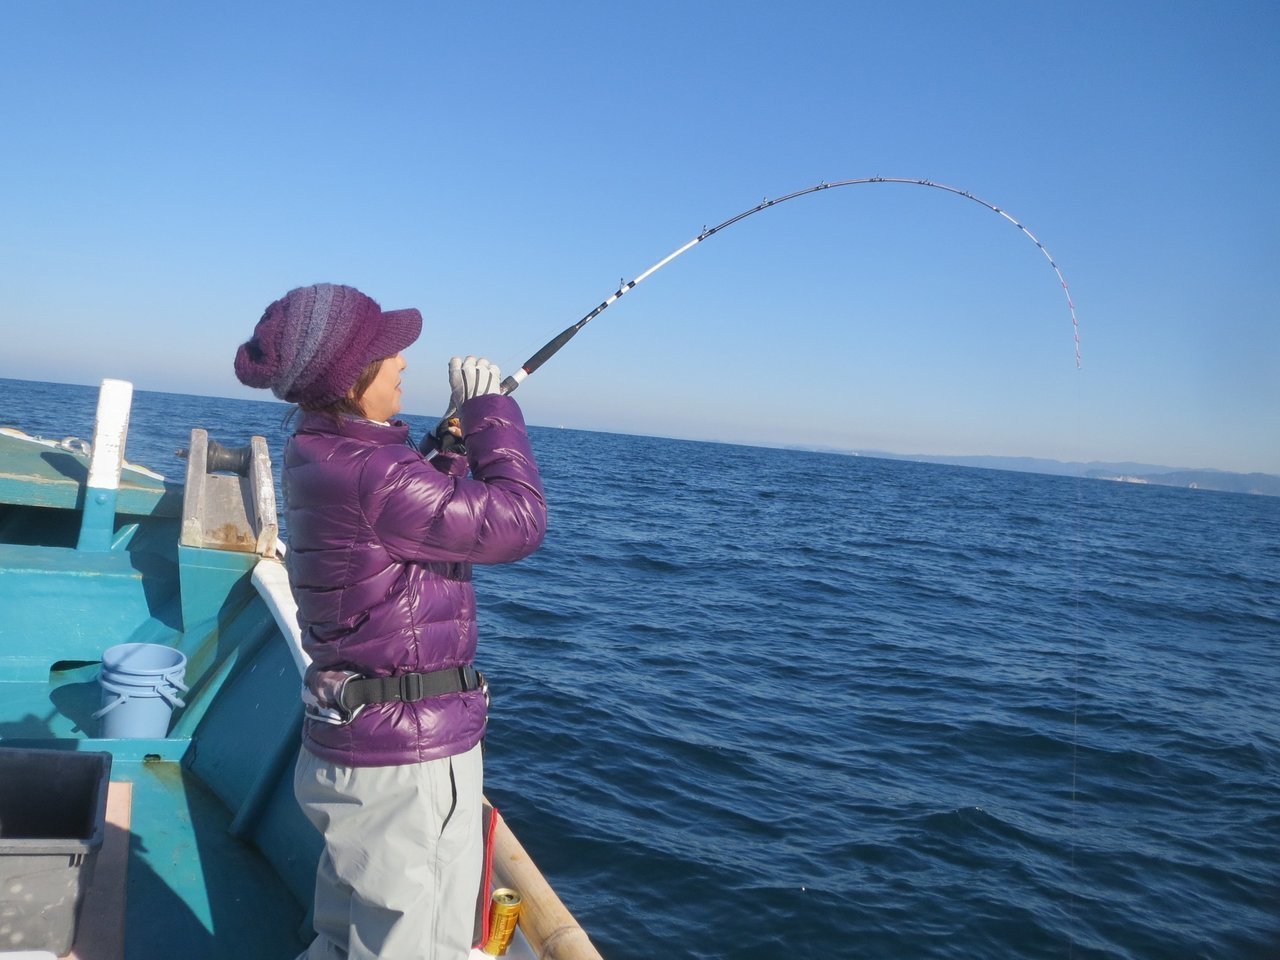 オオモンハタ釣りはひとつテンヤで楽しもう 食べて美味しい高級魚の釣り方や食べ方をご紹介します